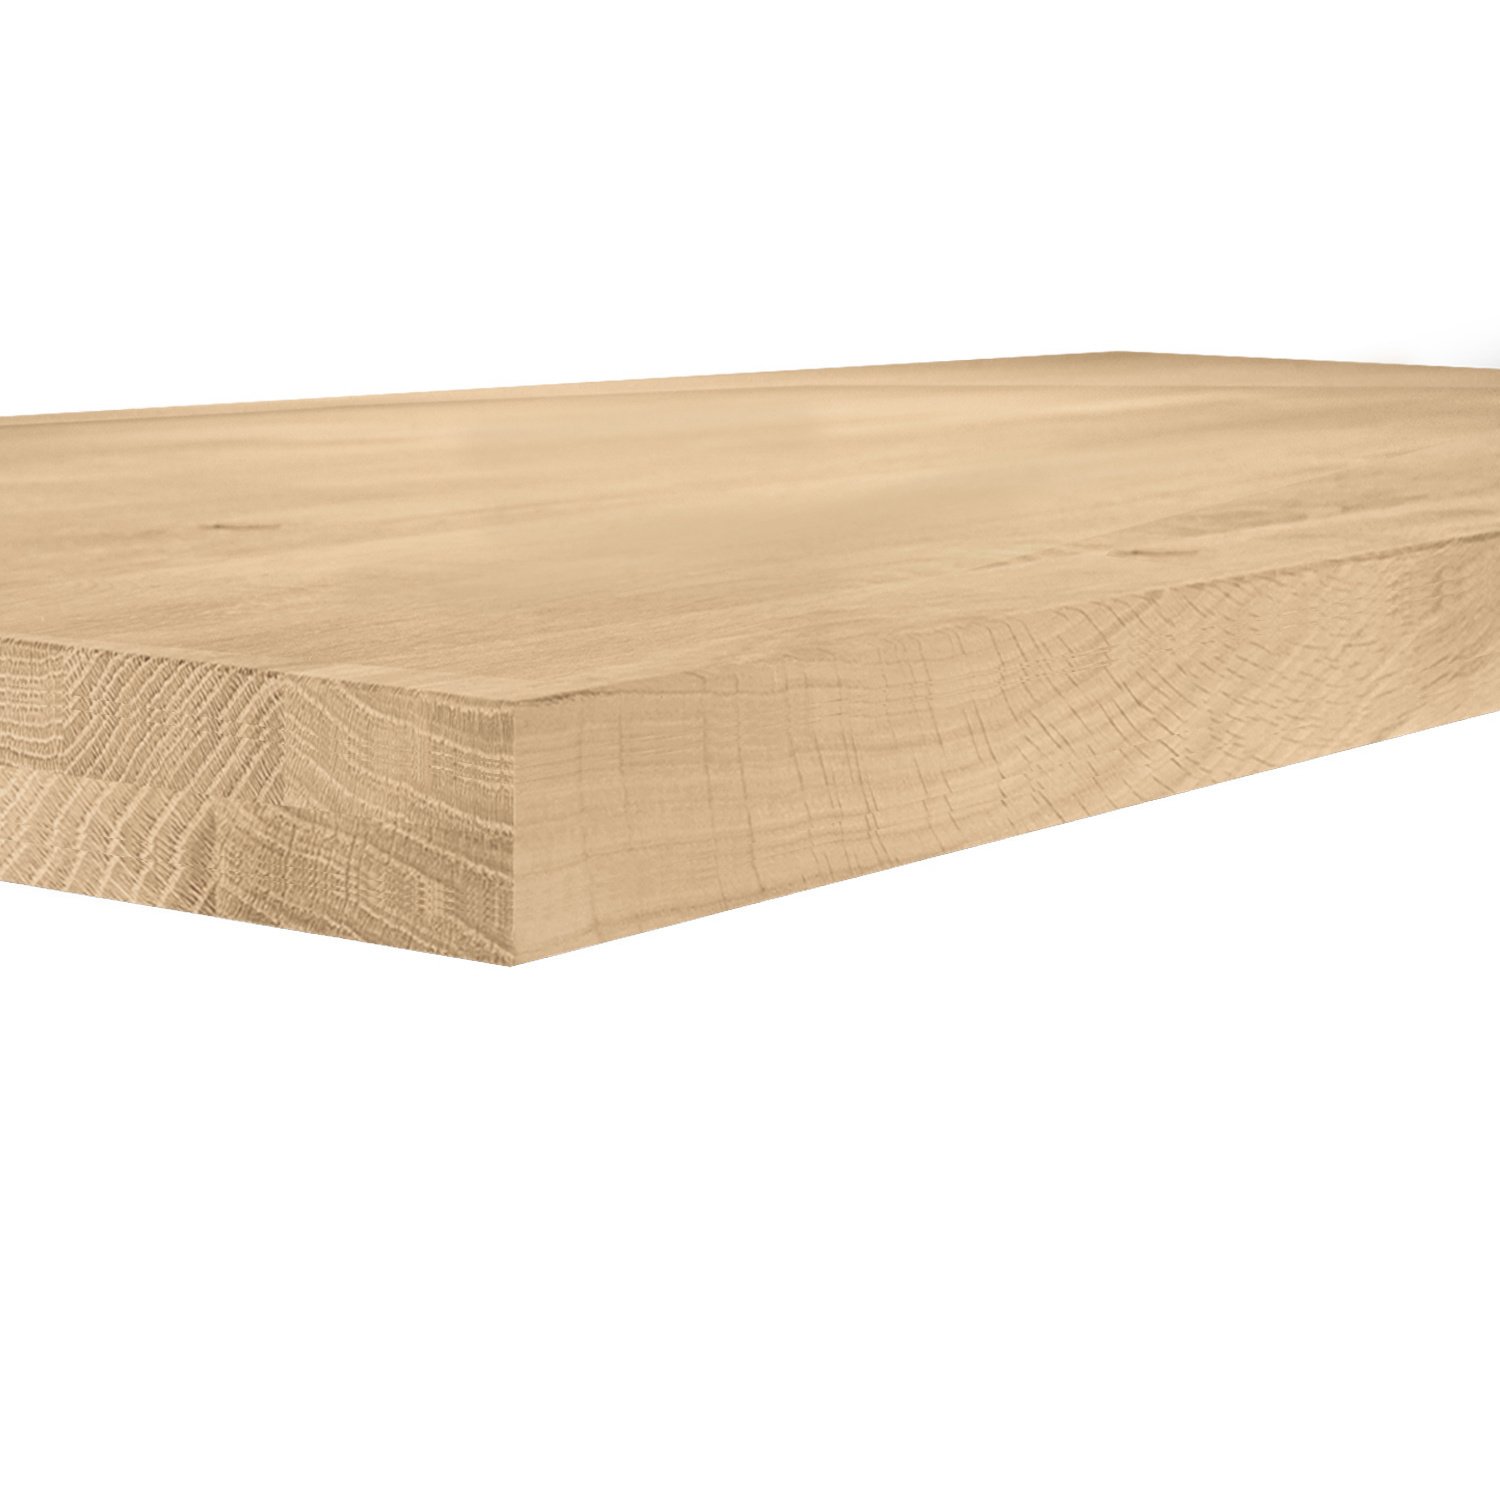  Tischplatte Eiche nach Maß - 6 cm dick (2-lagig) - Eichenholz rustikal - Eiche Tischplatte massiv - verleimt & künstlich getrocknet (HF 8-12%) - 50-120x50-350 cm